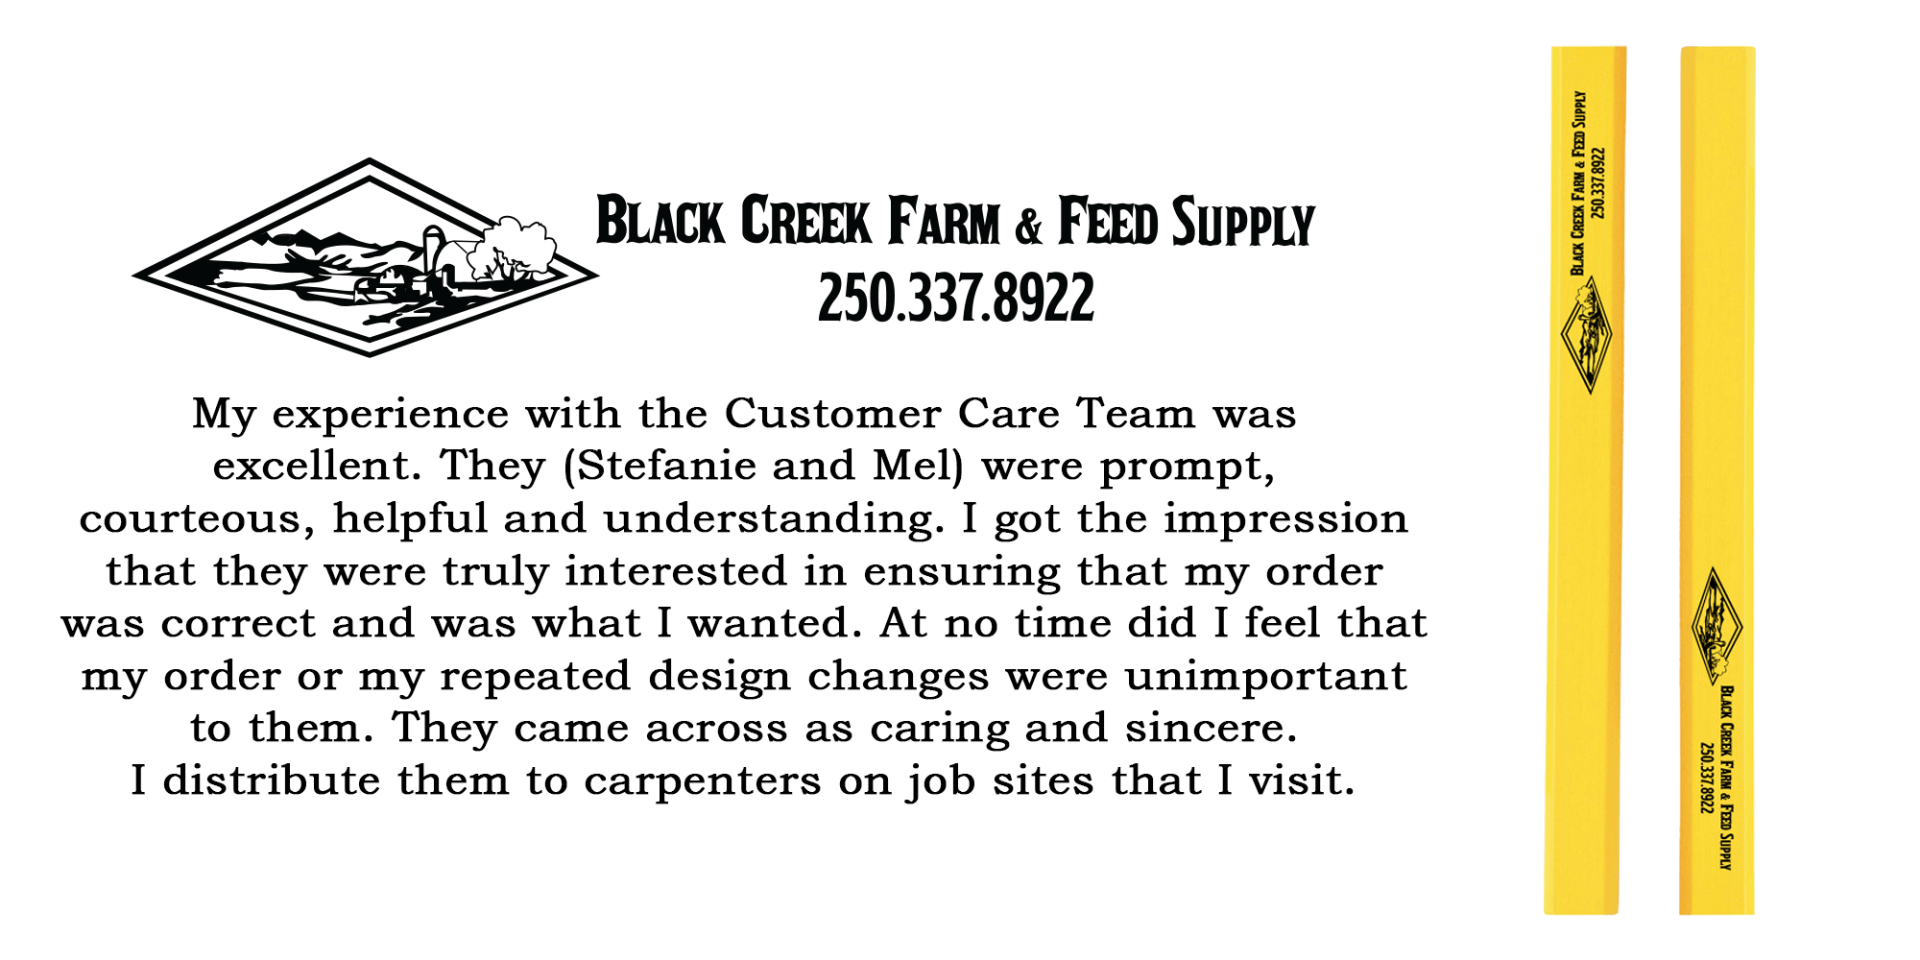 Black Creek Farm & Feed Supply Review